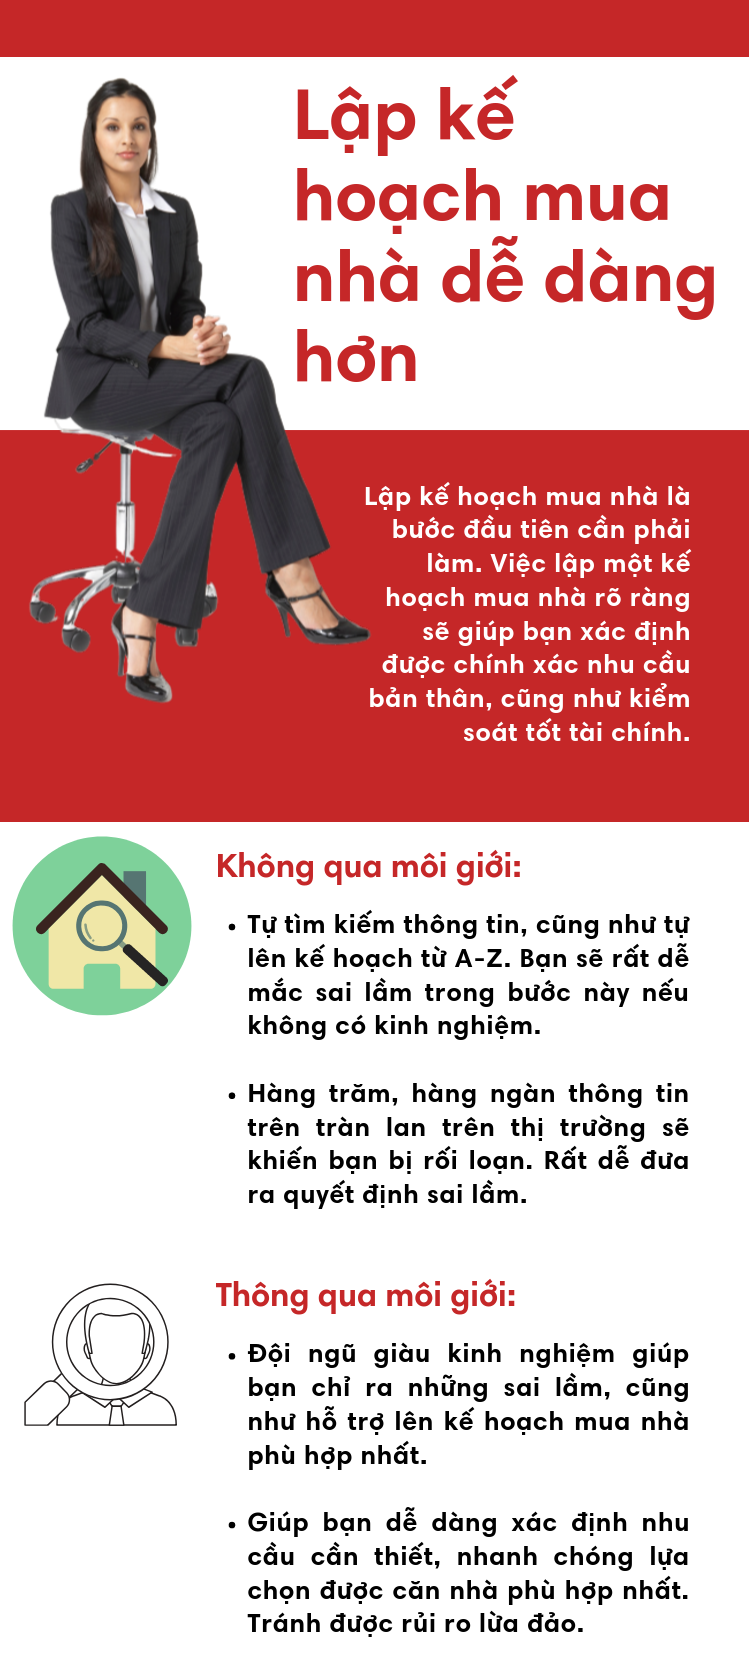 infographic-5-loi-ich-khi-mua-nha-qua-moi-gioi